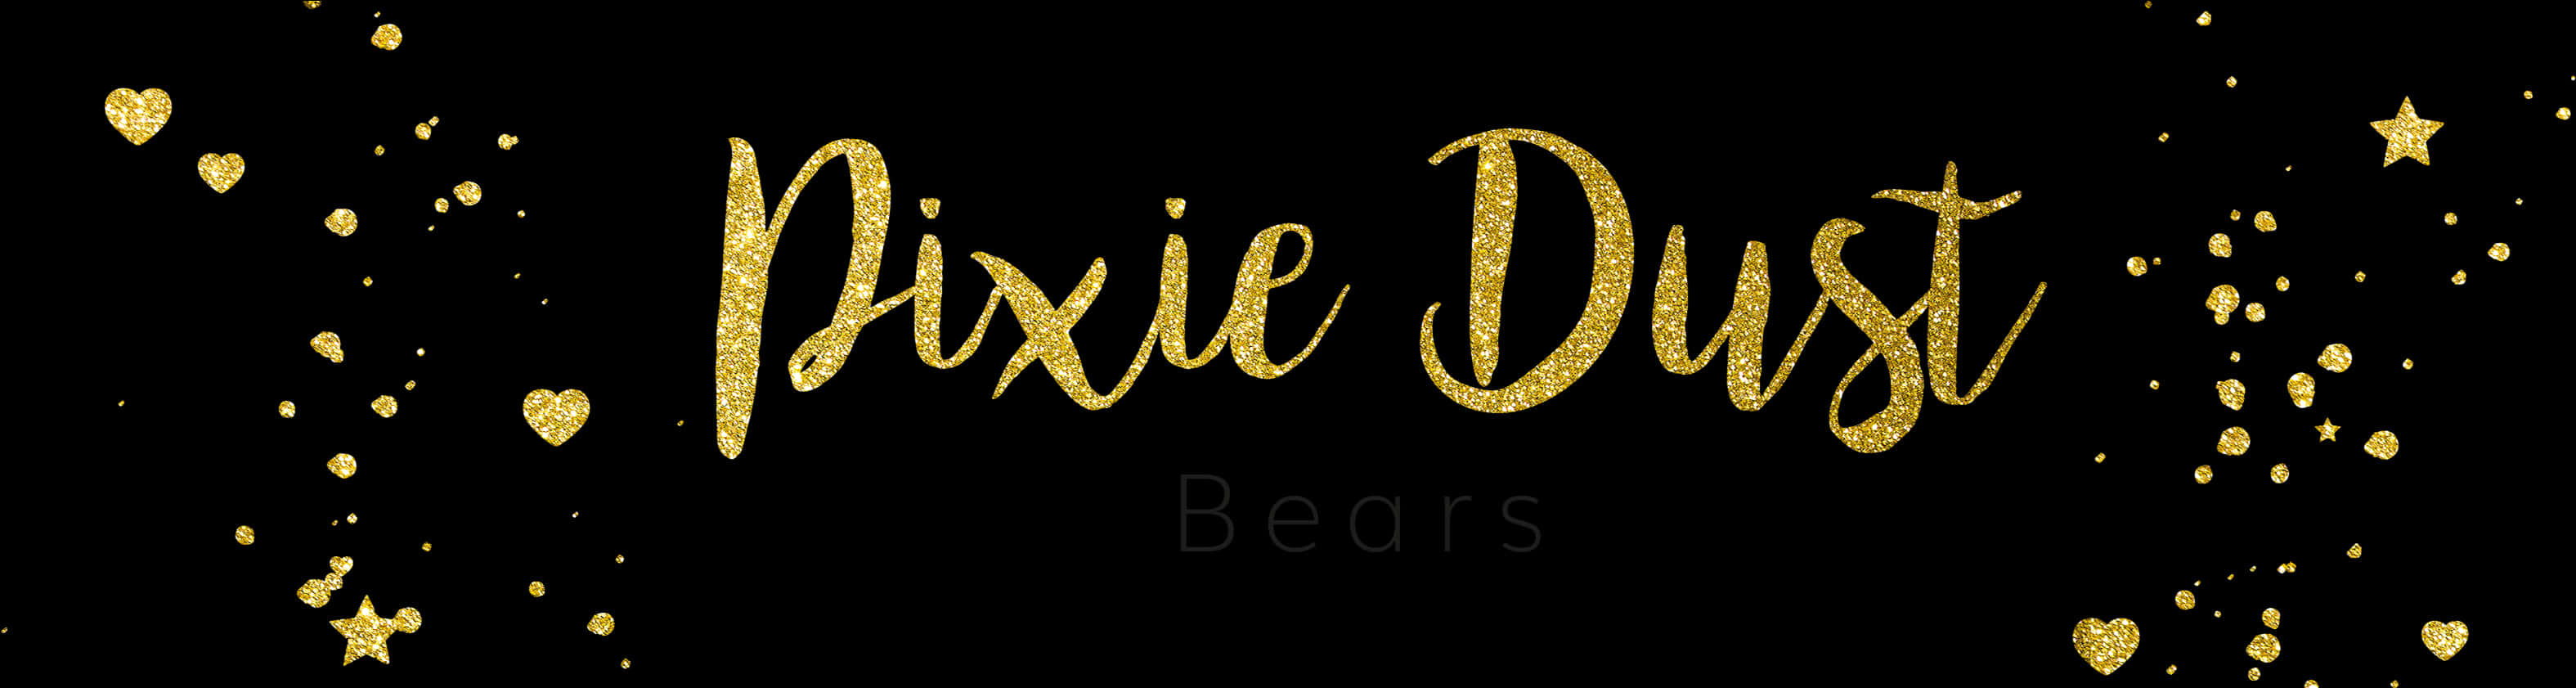 Pixie Dust Bears Text